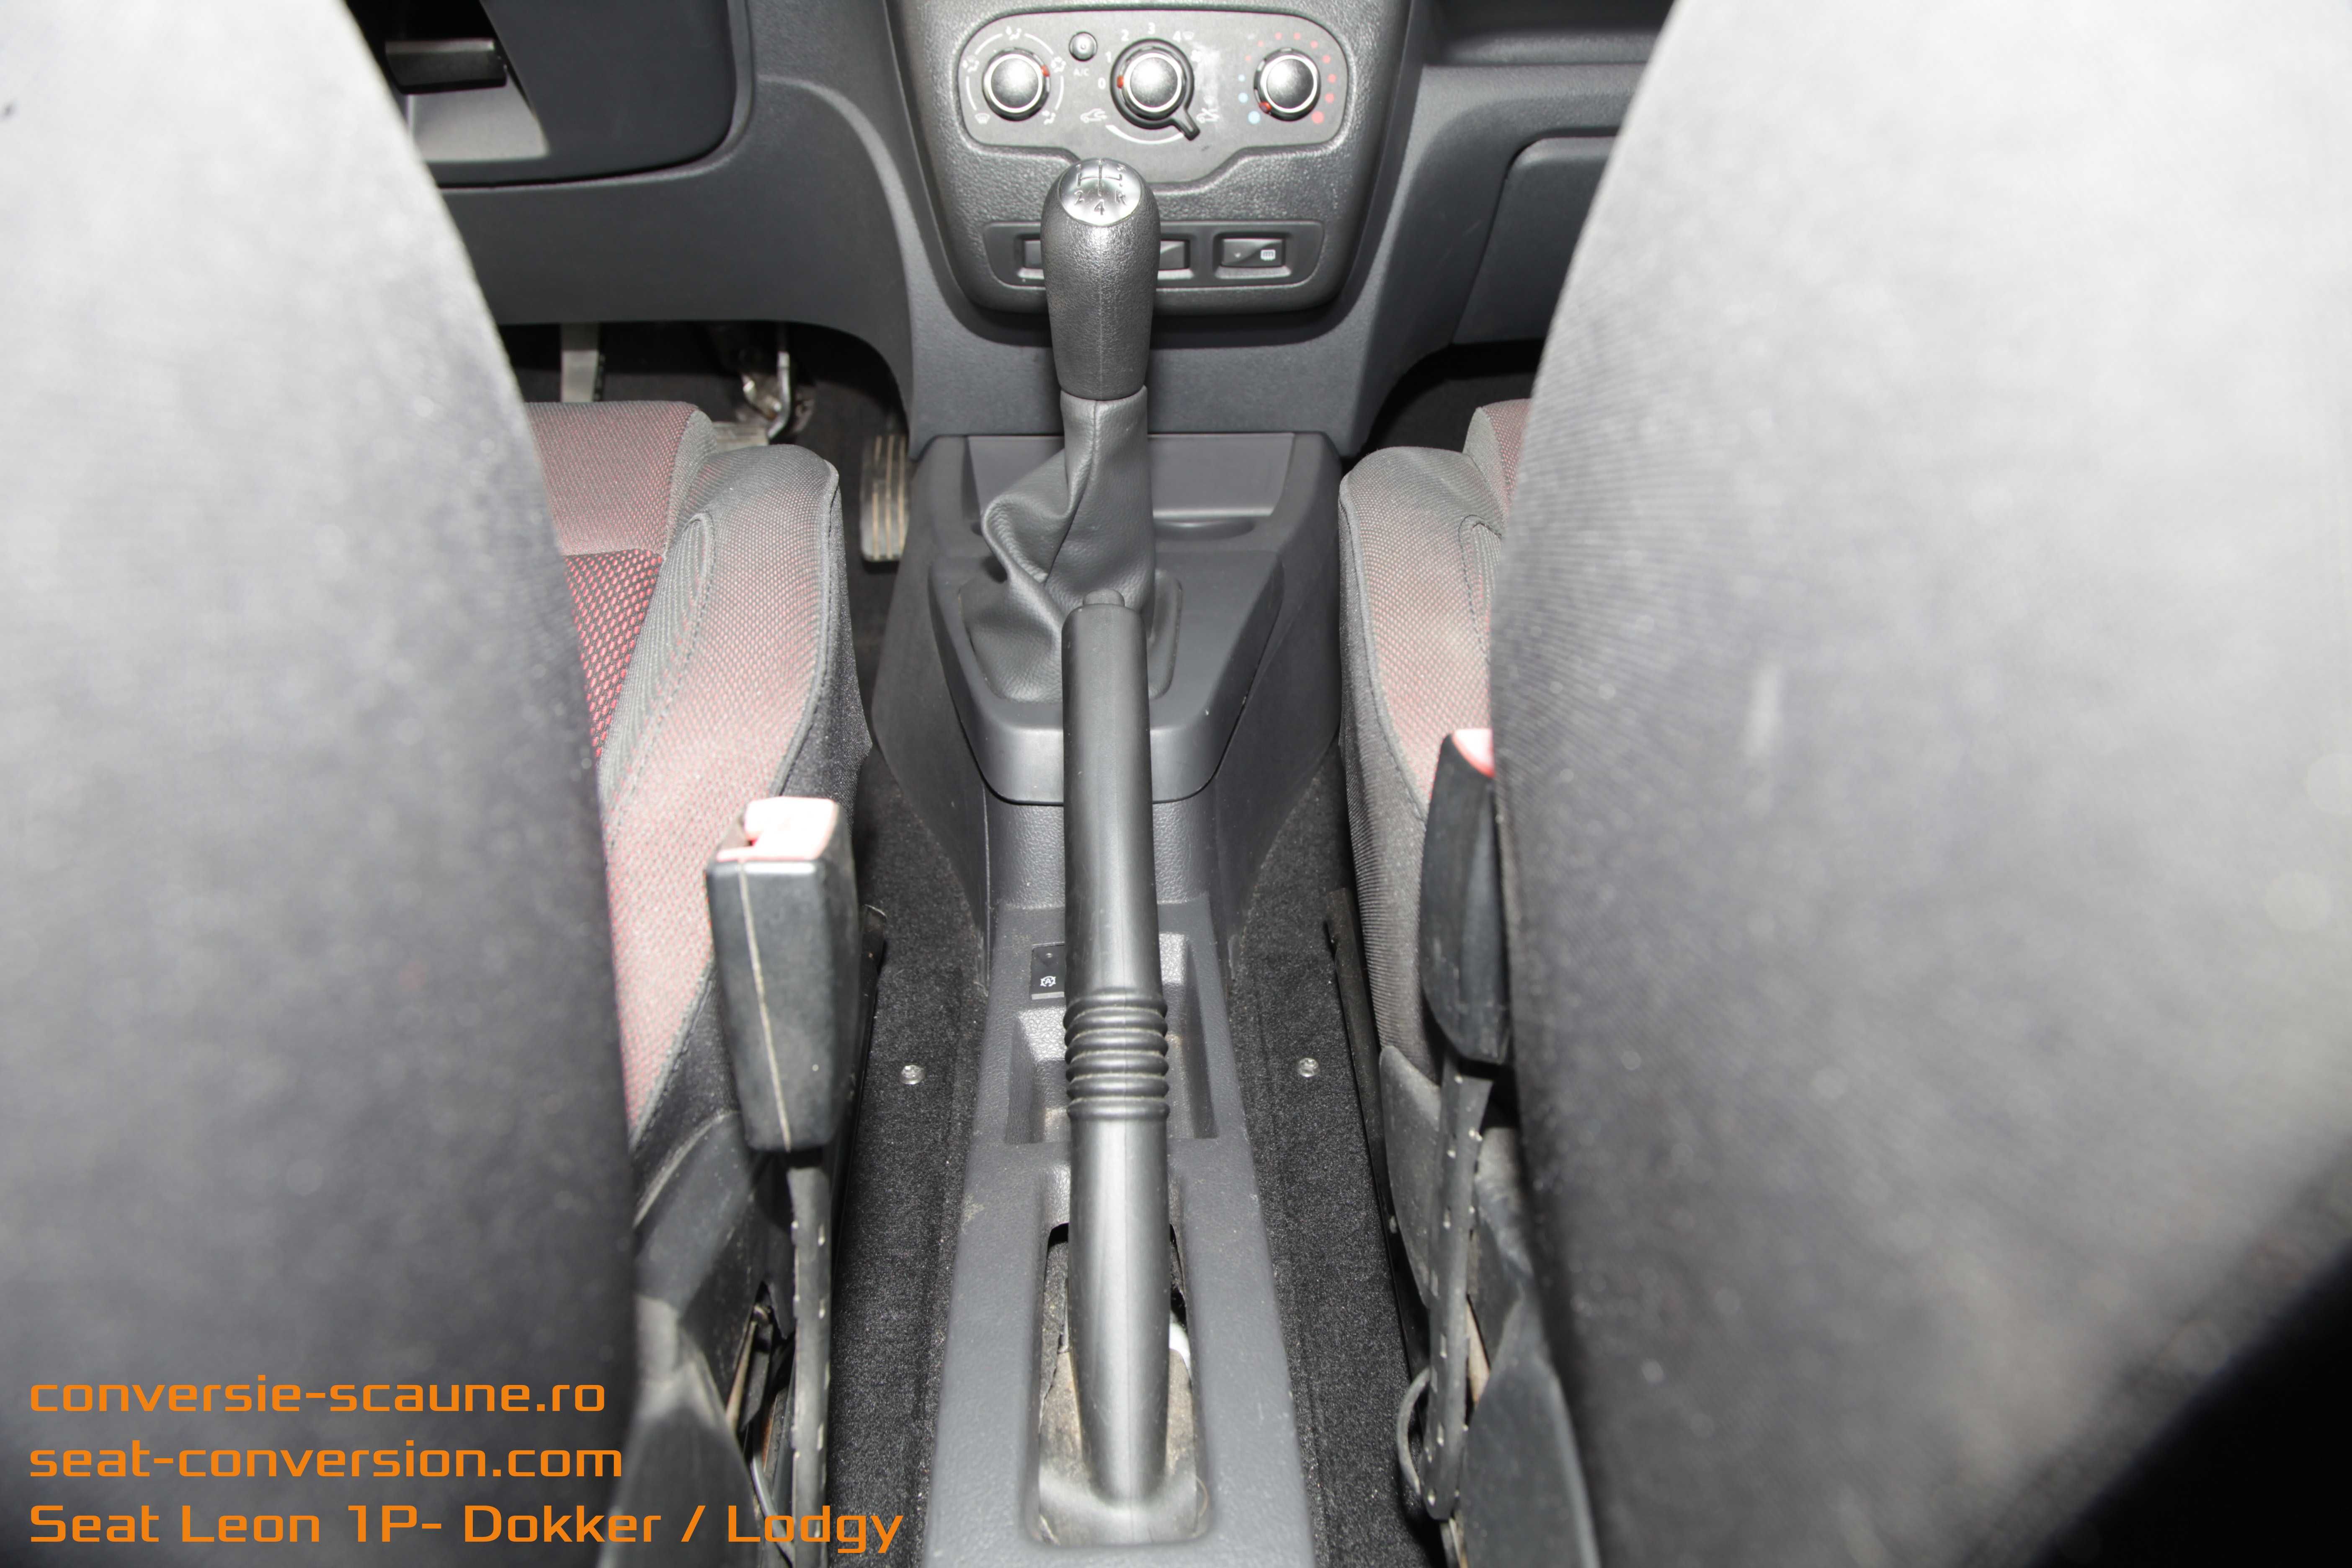 Sistem conversie scaune compatibil Seat Leon FR 1P - Lodgy Dokker